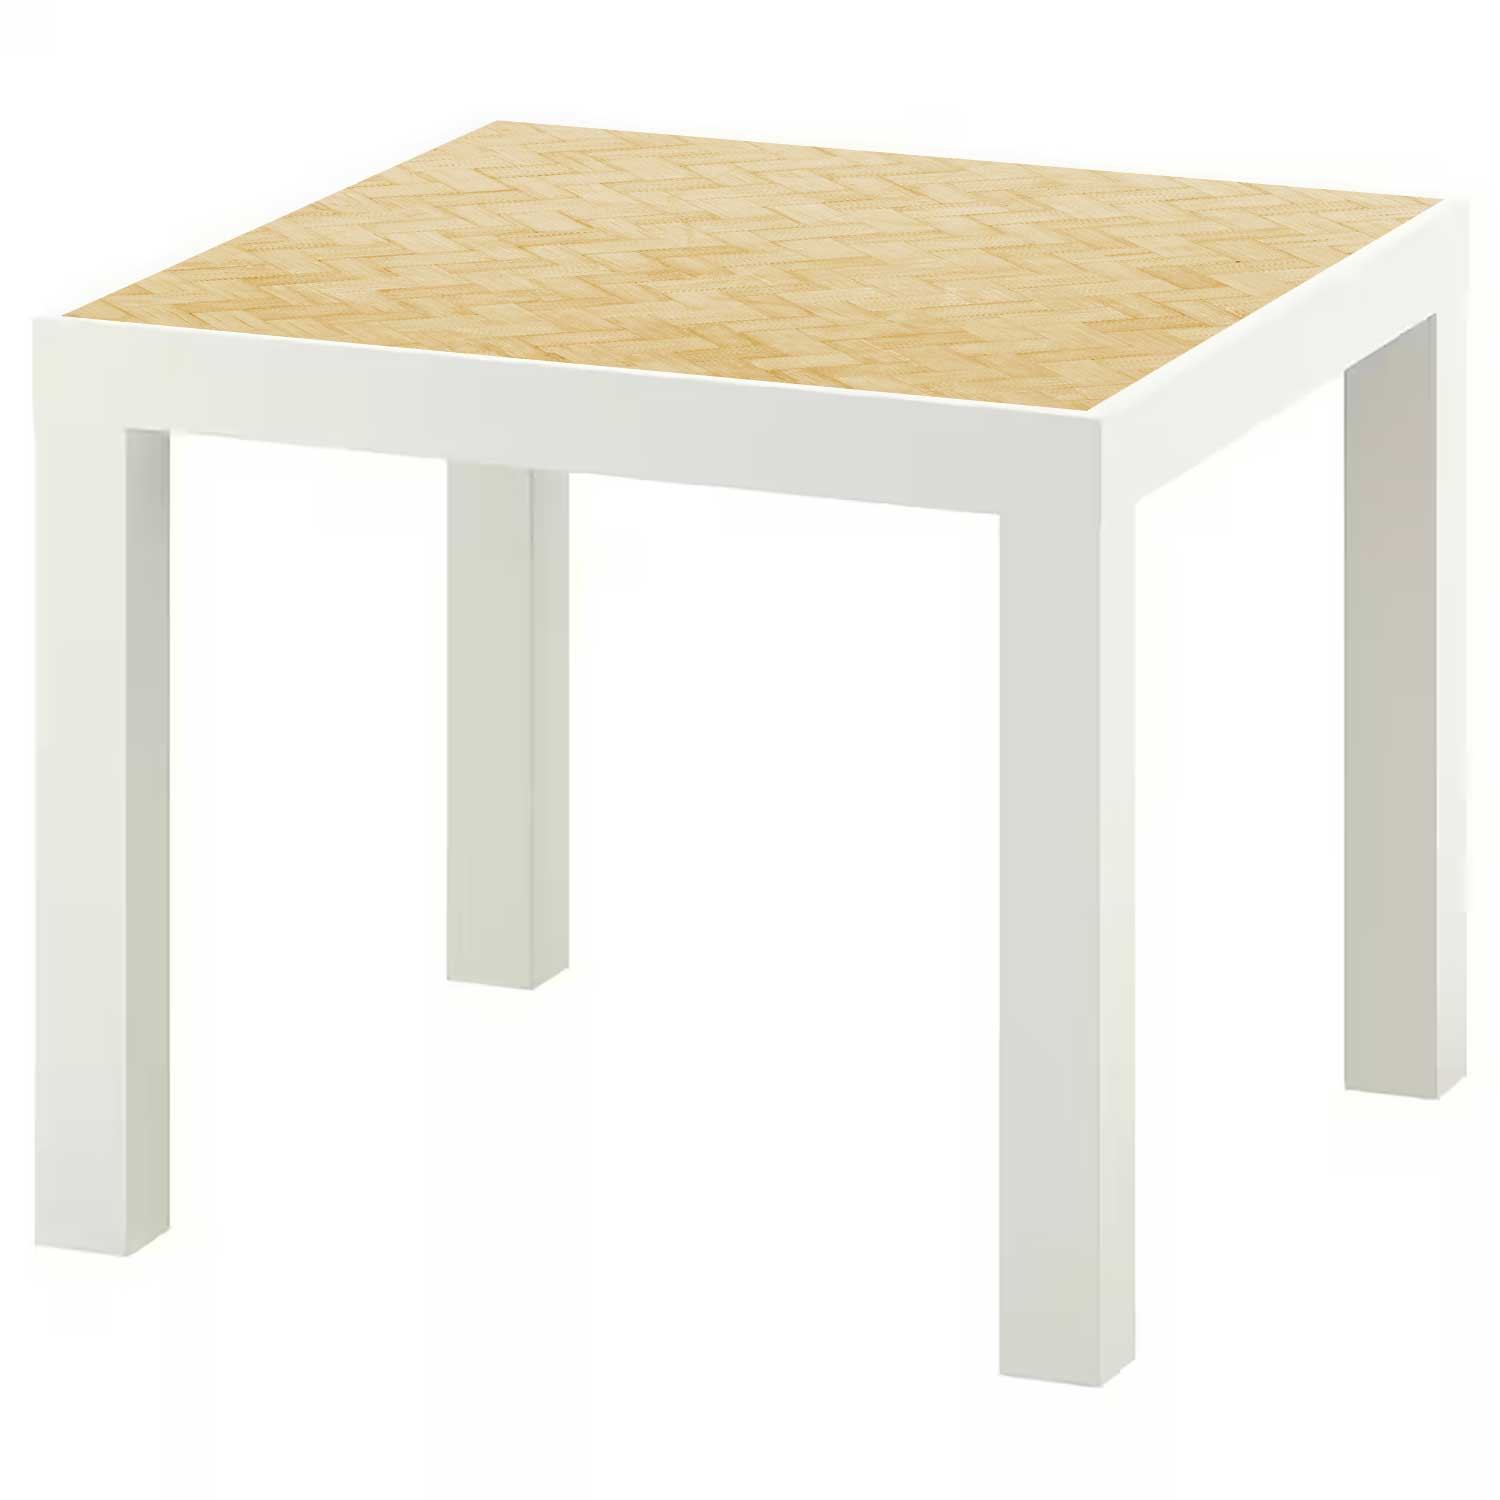 Möbelfolie für IKEA Lack Tisch 55x55 cm 'Holz Herringbone'